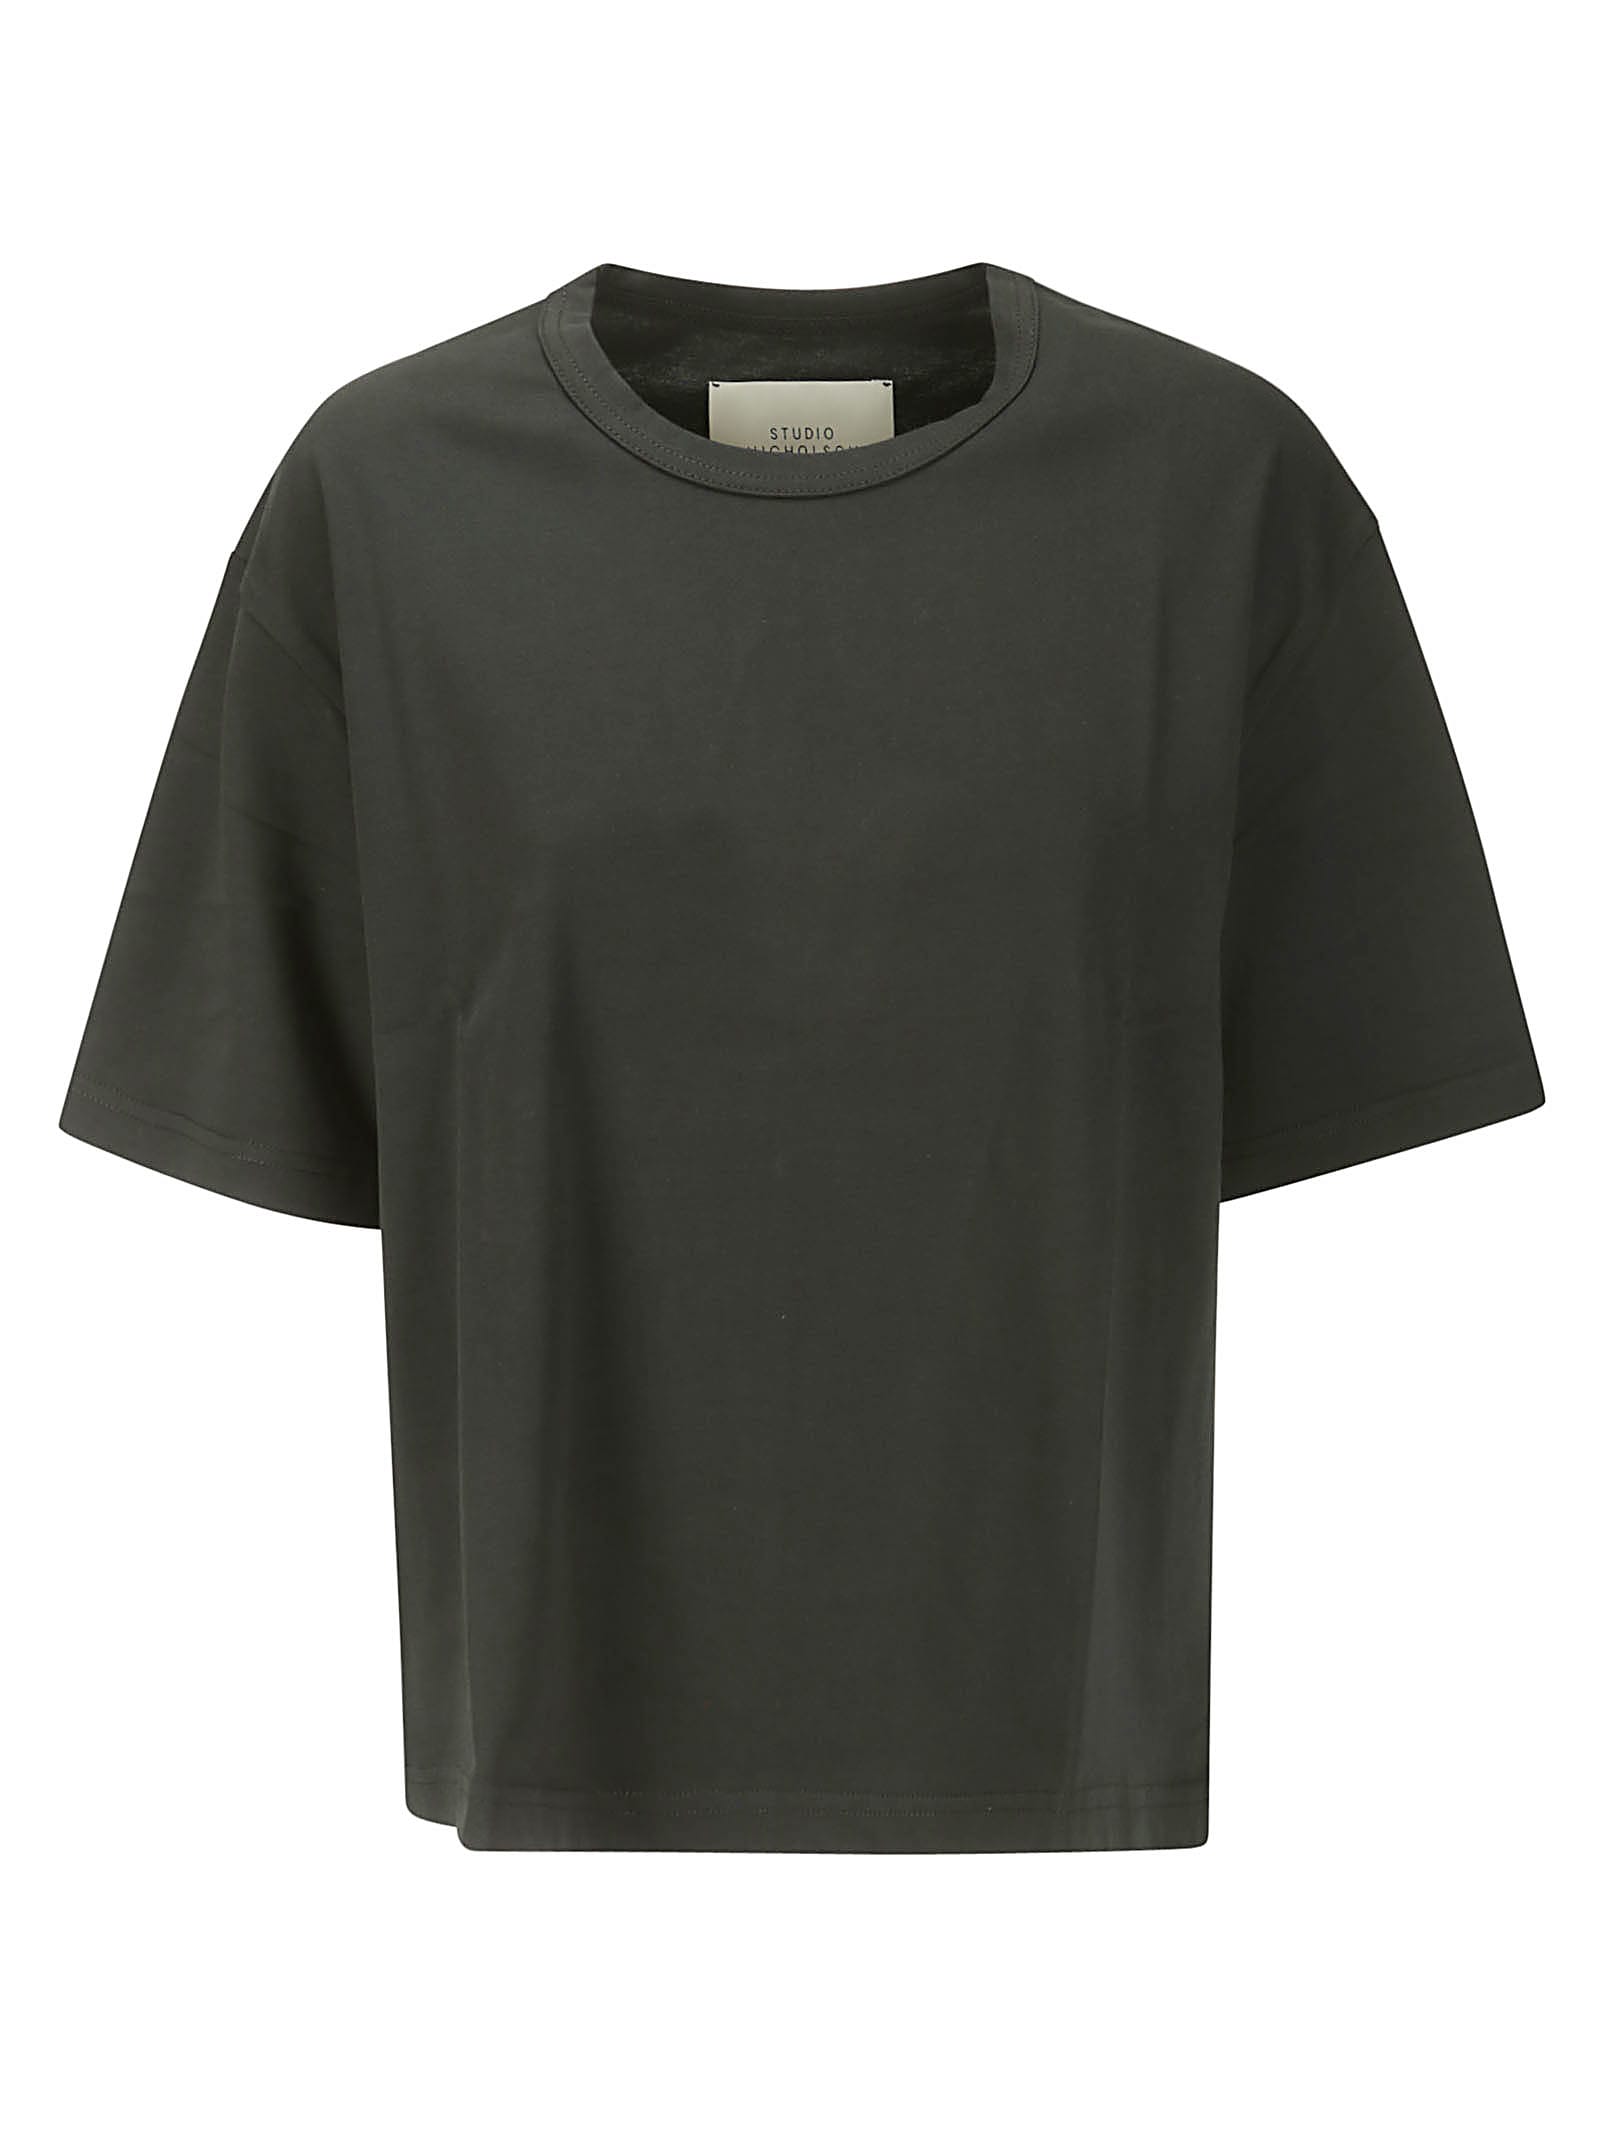 Continuity - Jersey - Womens Short Sleeve T-shirt